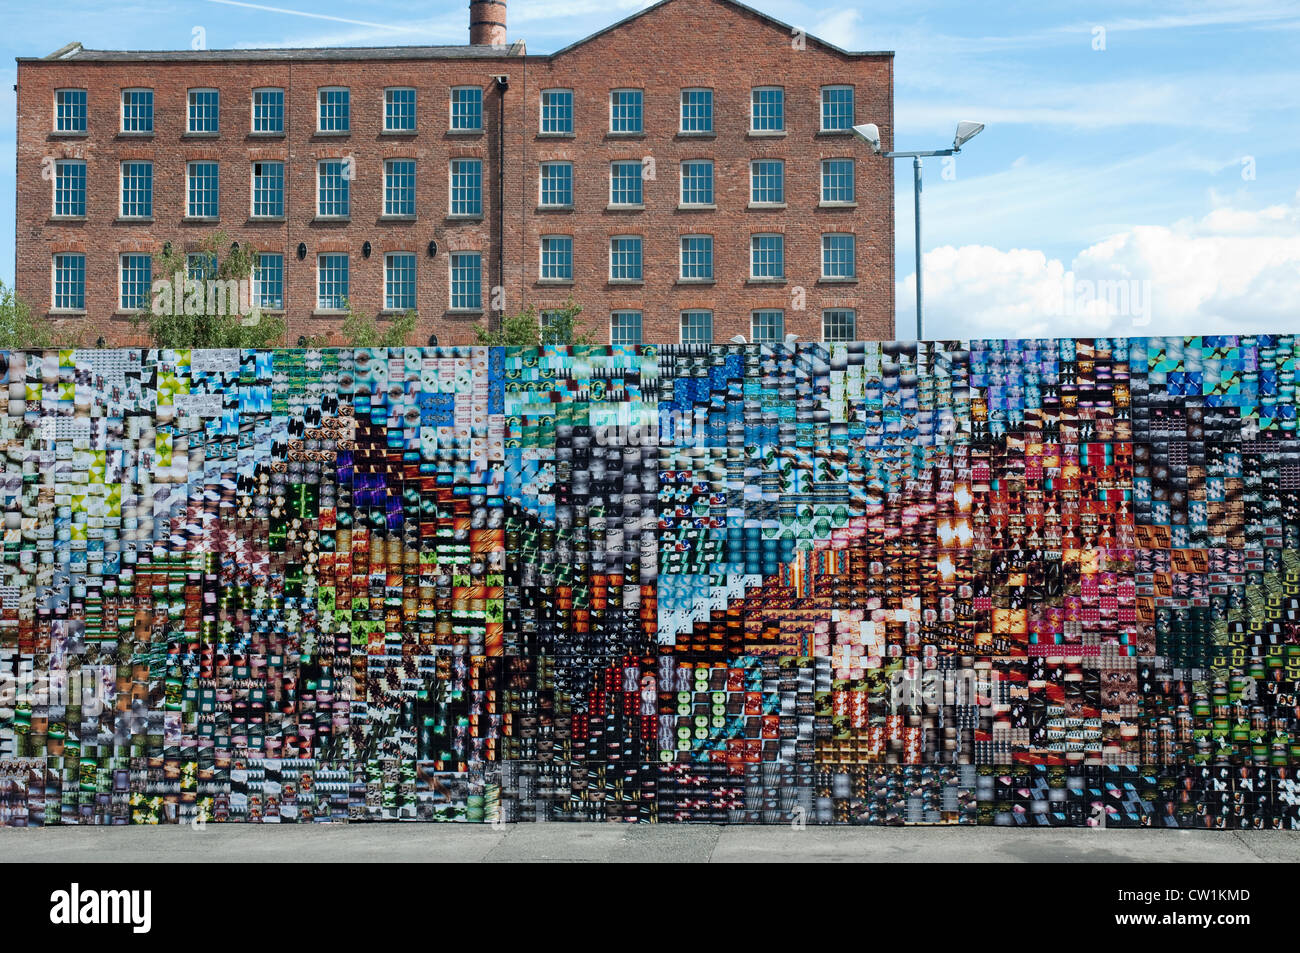 LomoWall, Manchester. Un mur d'images créées à partir d'images fournies par Lomography 14 000 500 personnes.Le Street, Manchester. Banque D'Images